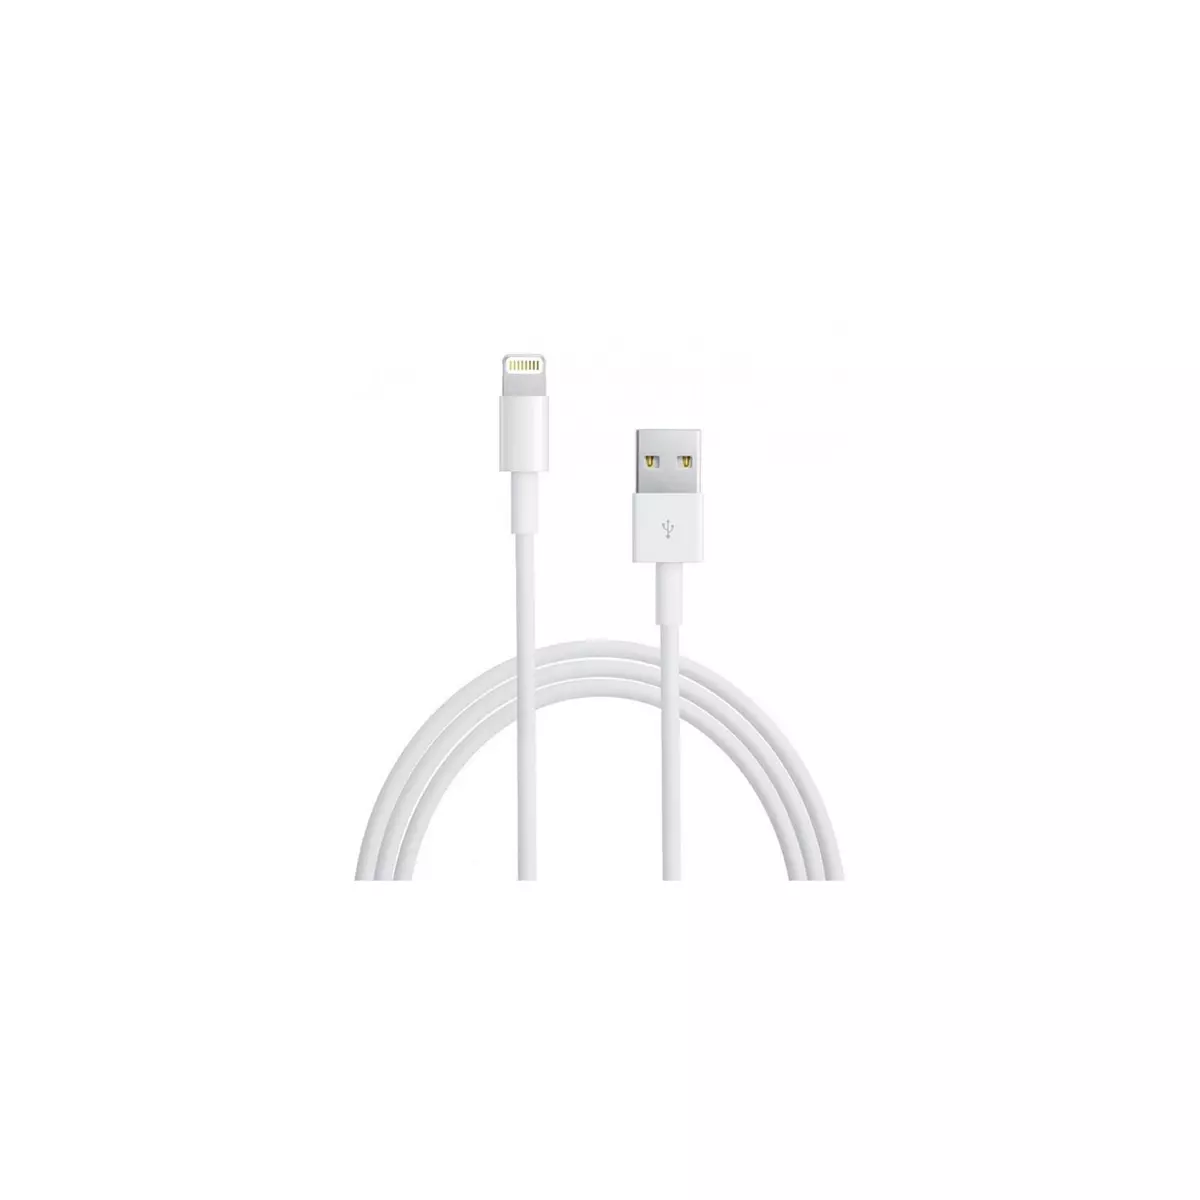  Câble Lightning-USB iPhone SE origine 1 mètre